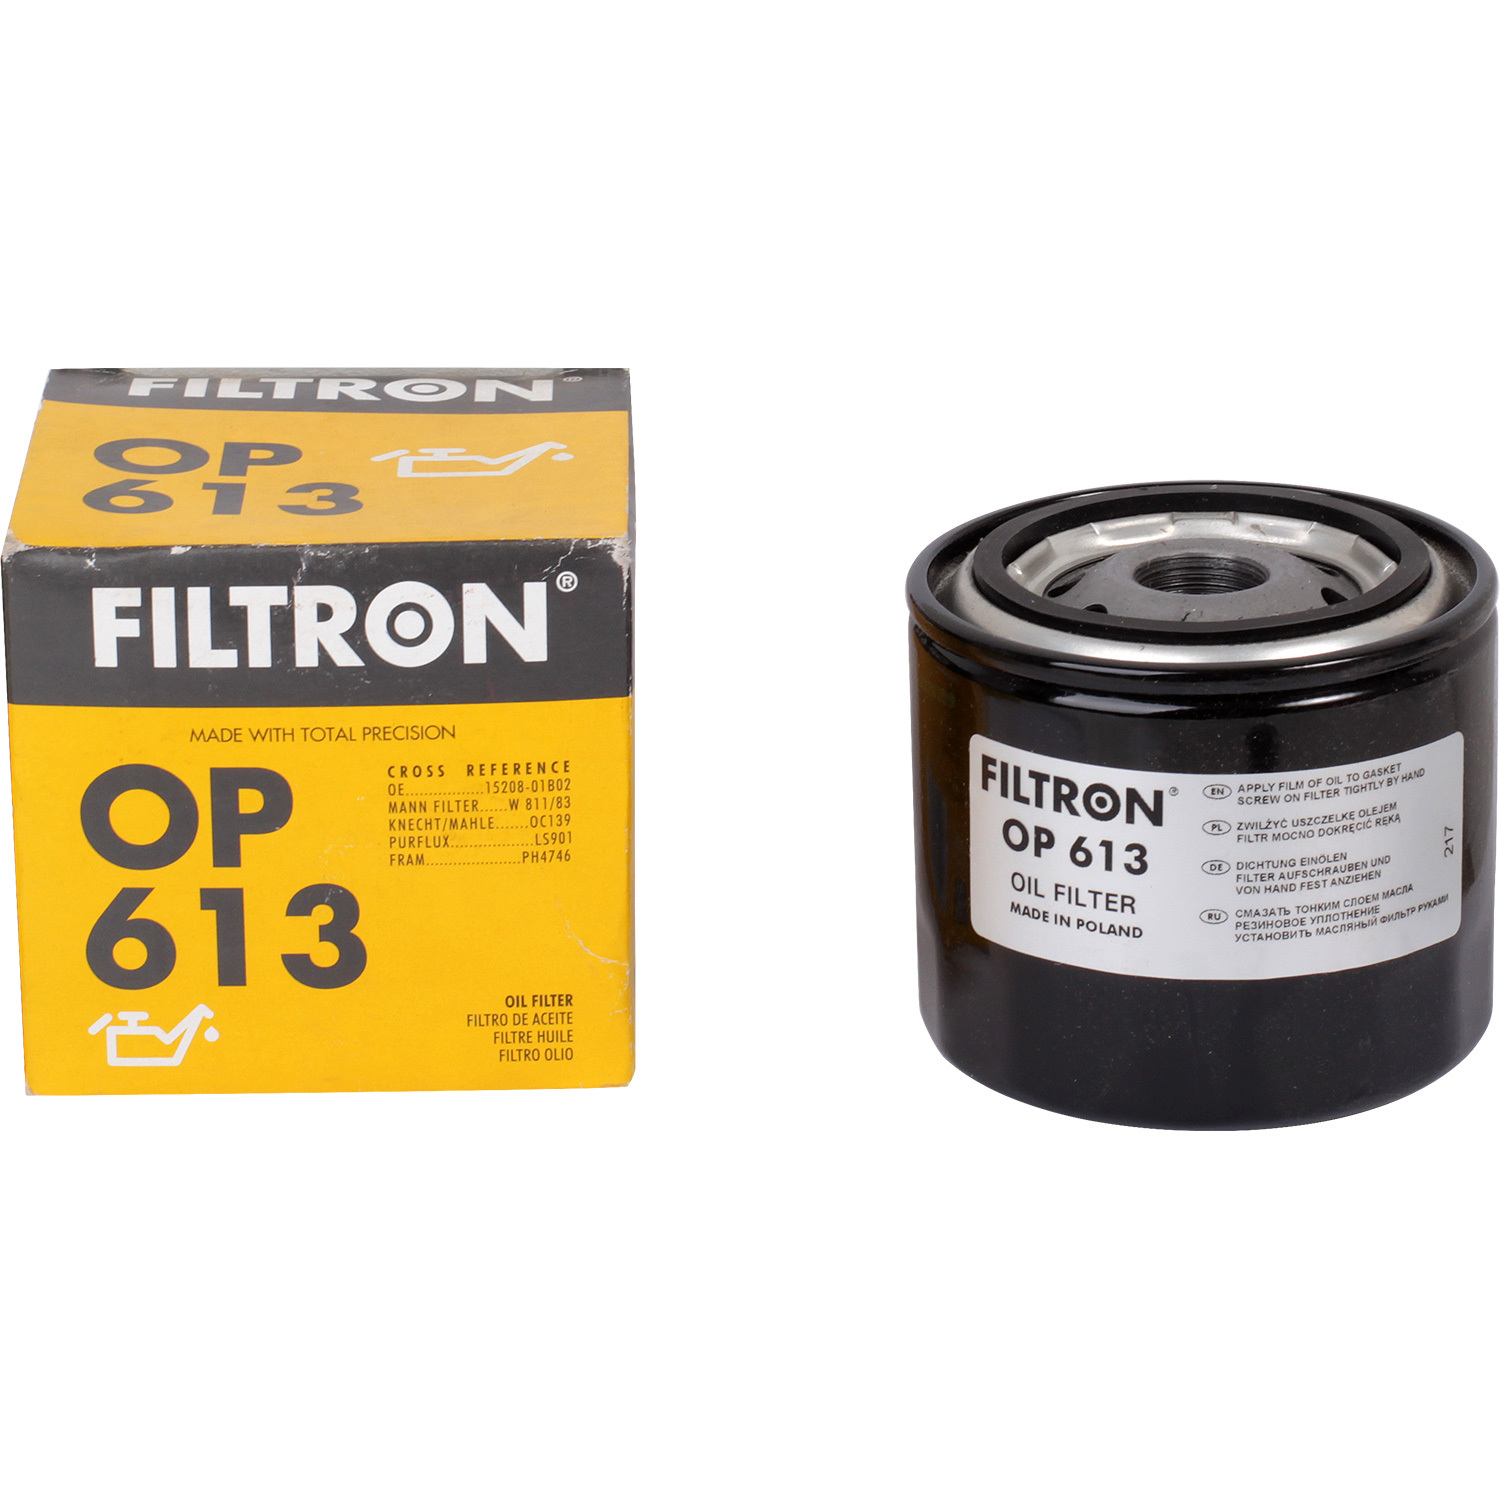 Фильтры Filtron Фильтр масляный Filtron OP613 фильтры filtron фильтр масляный filtron oe671